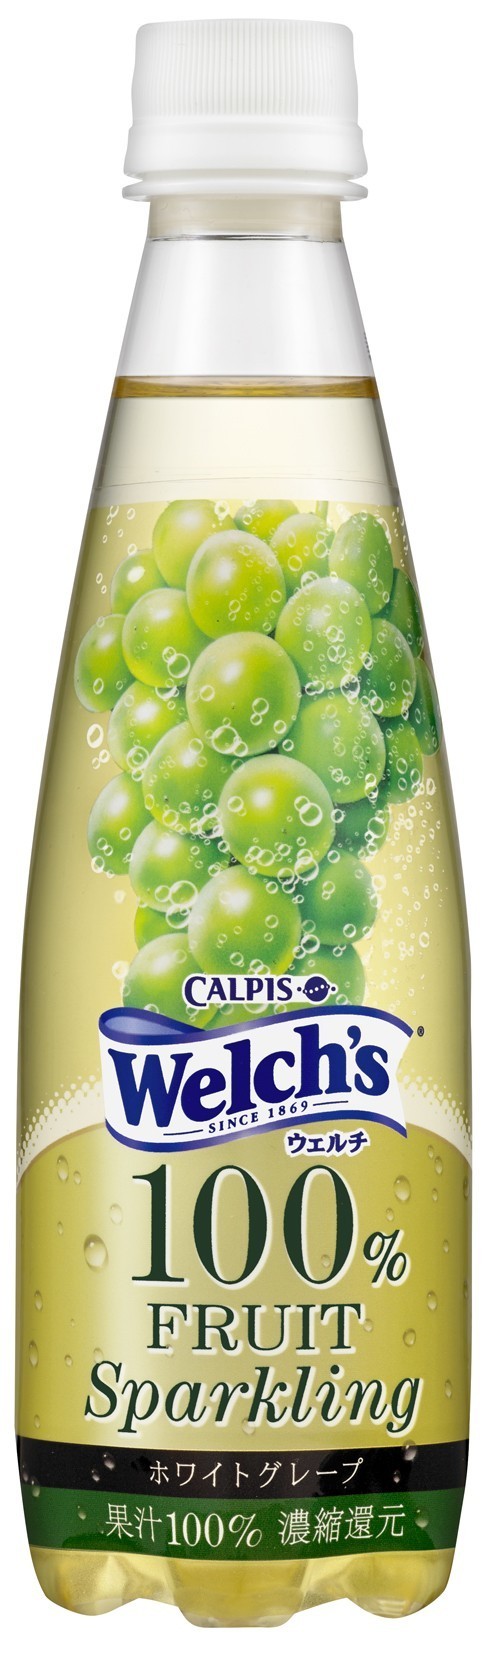 カルピス「Welch's」からホワイトグレープ果汁100%のスパークリング飲料発売